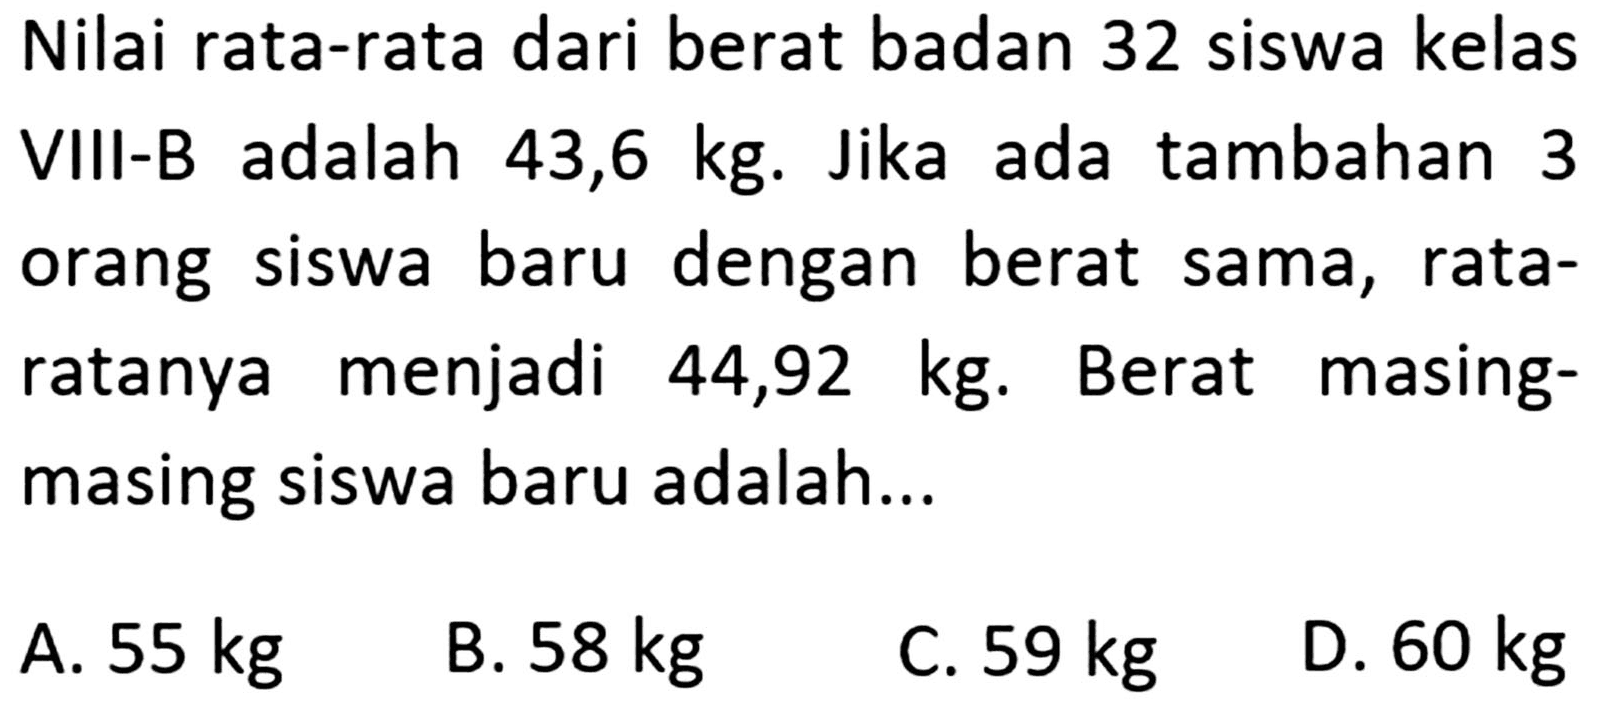 Nilai rata-rata dari berat badan 32 siswa kelas adalah VIII-B 43,6 kg. Jika ada tambahan 3 orang baru dengan siswa berat sama, rata- ratanya menjadi masing- 44,92 kg. Berat masing siswa baru adalah...